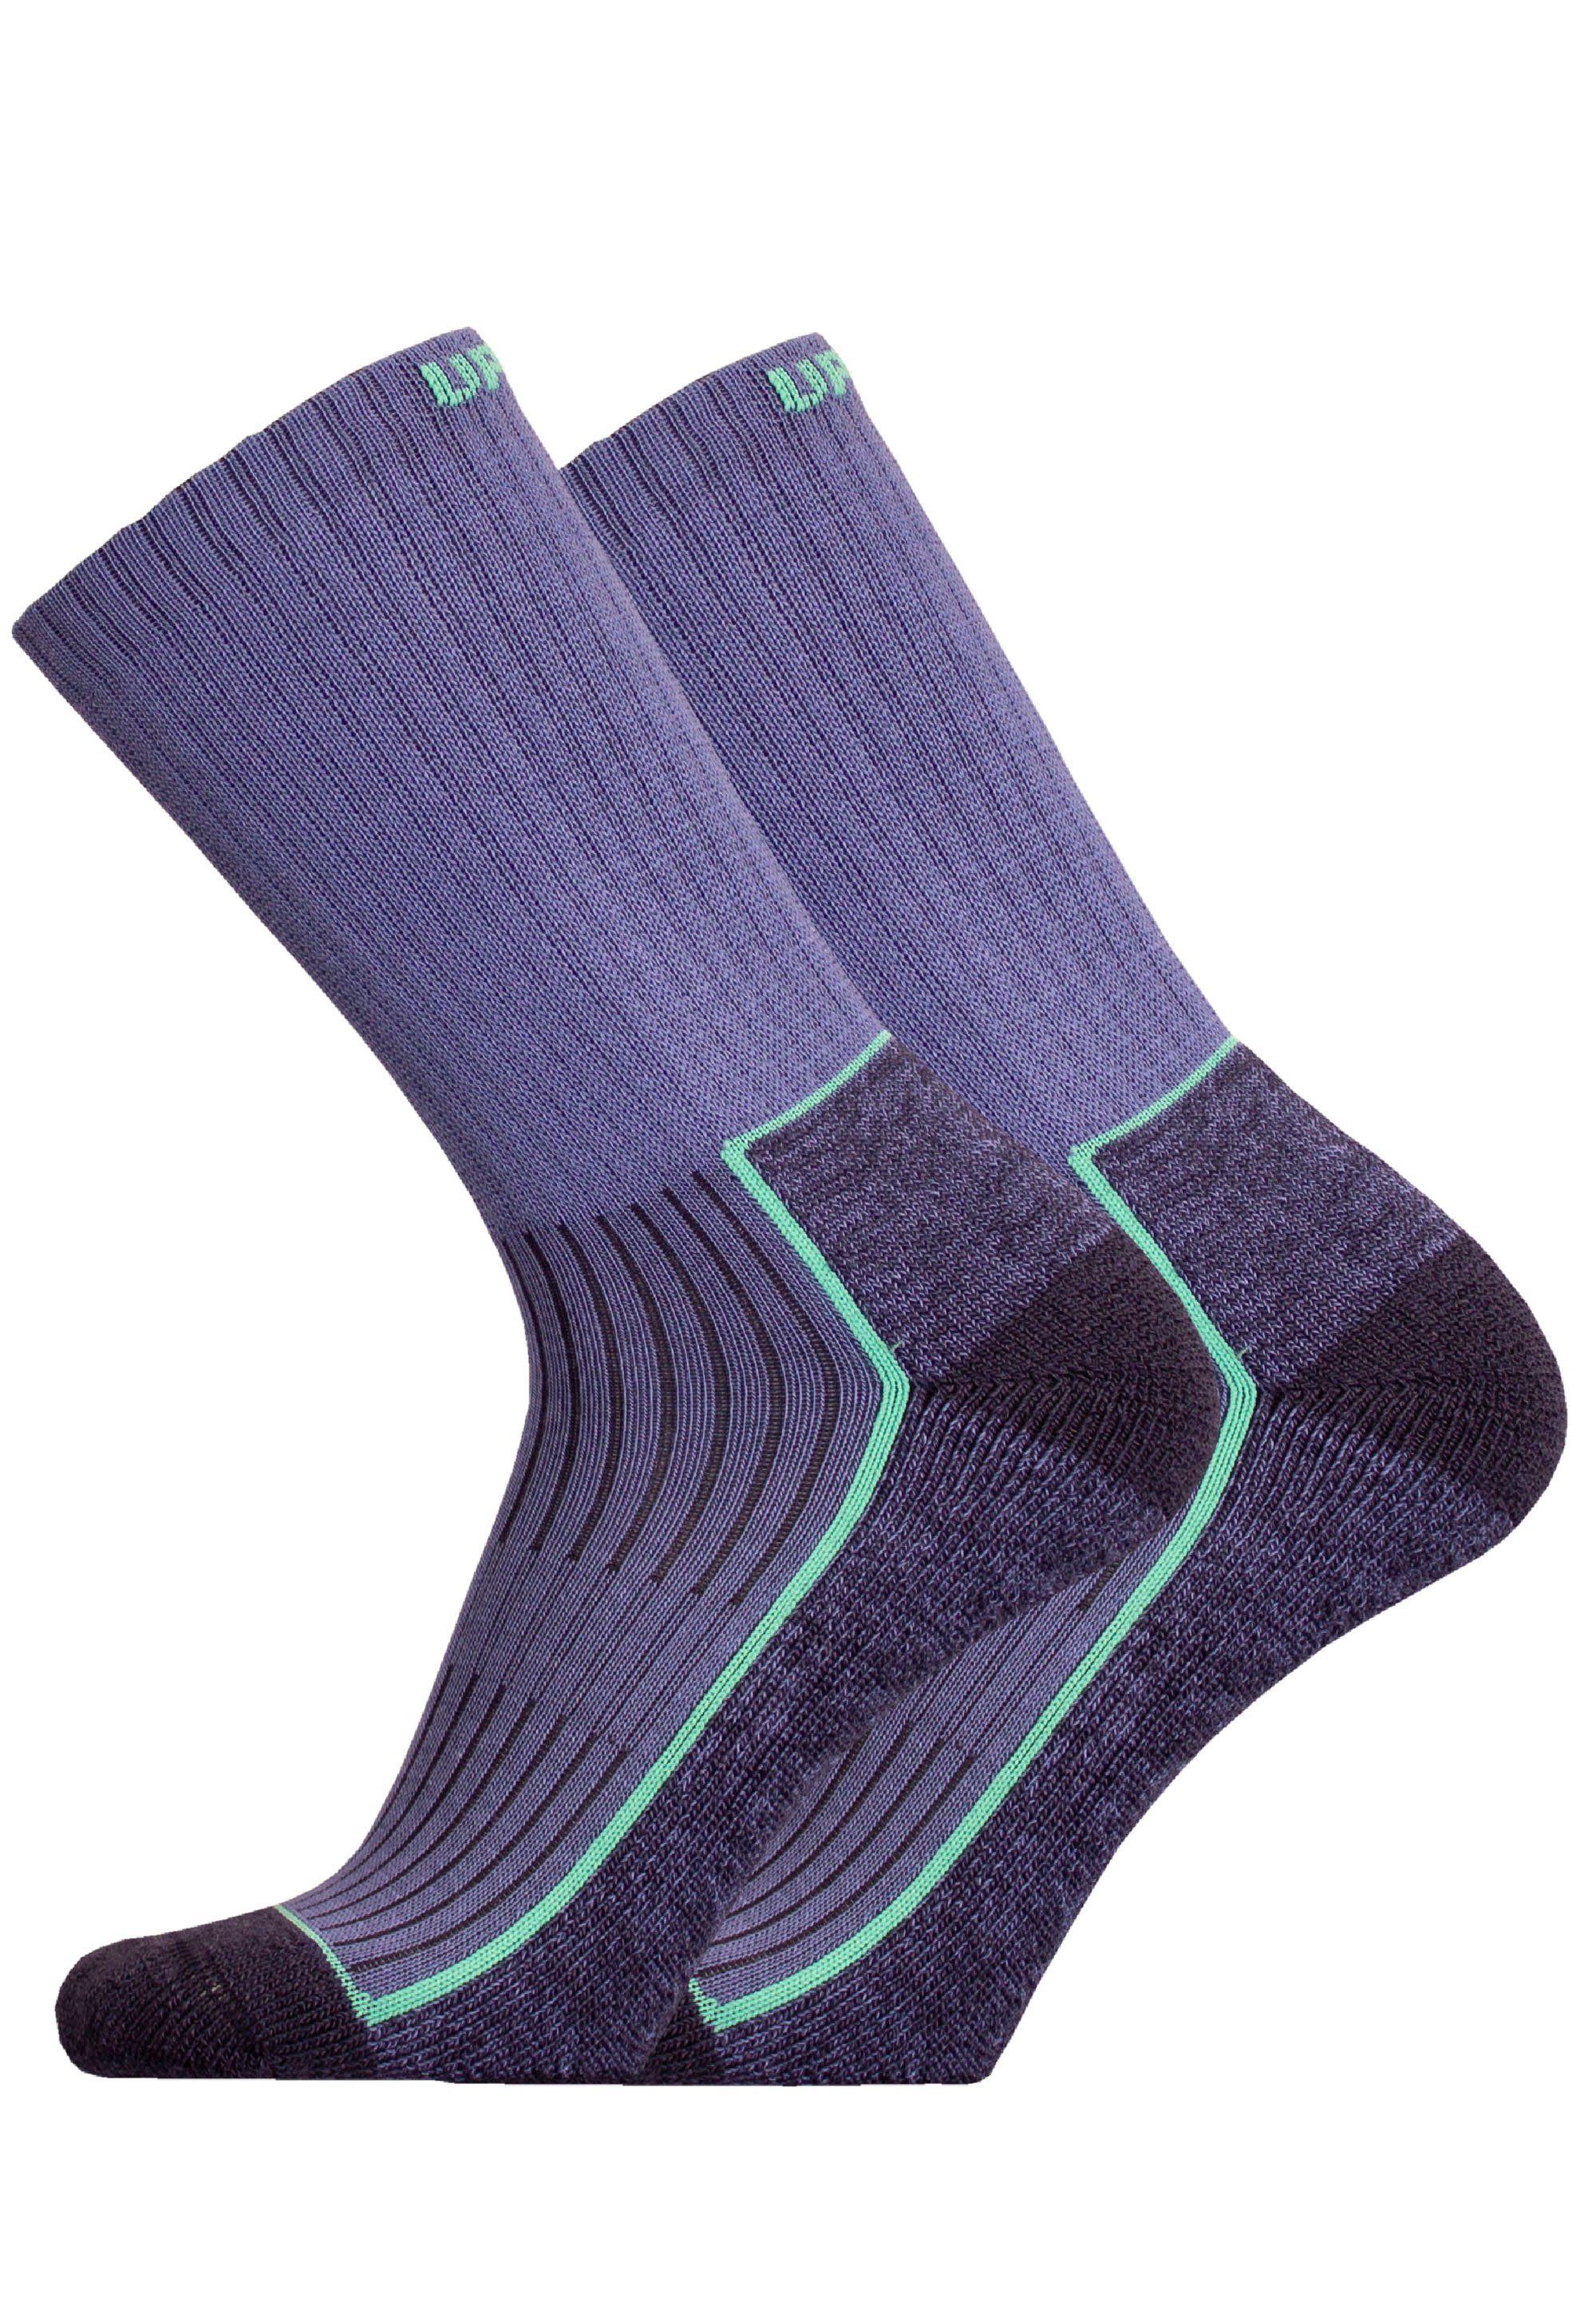 UphillSport Socken SAANA 2er Pack (2-Paar) mit speziell geformter Ferse blau